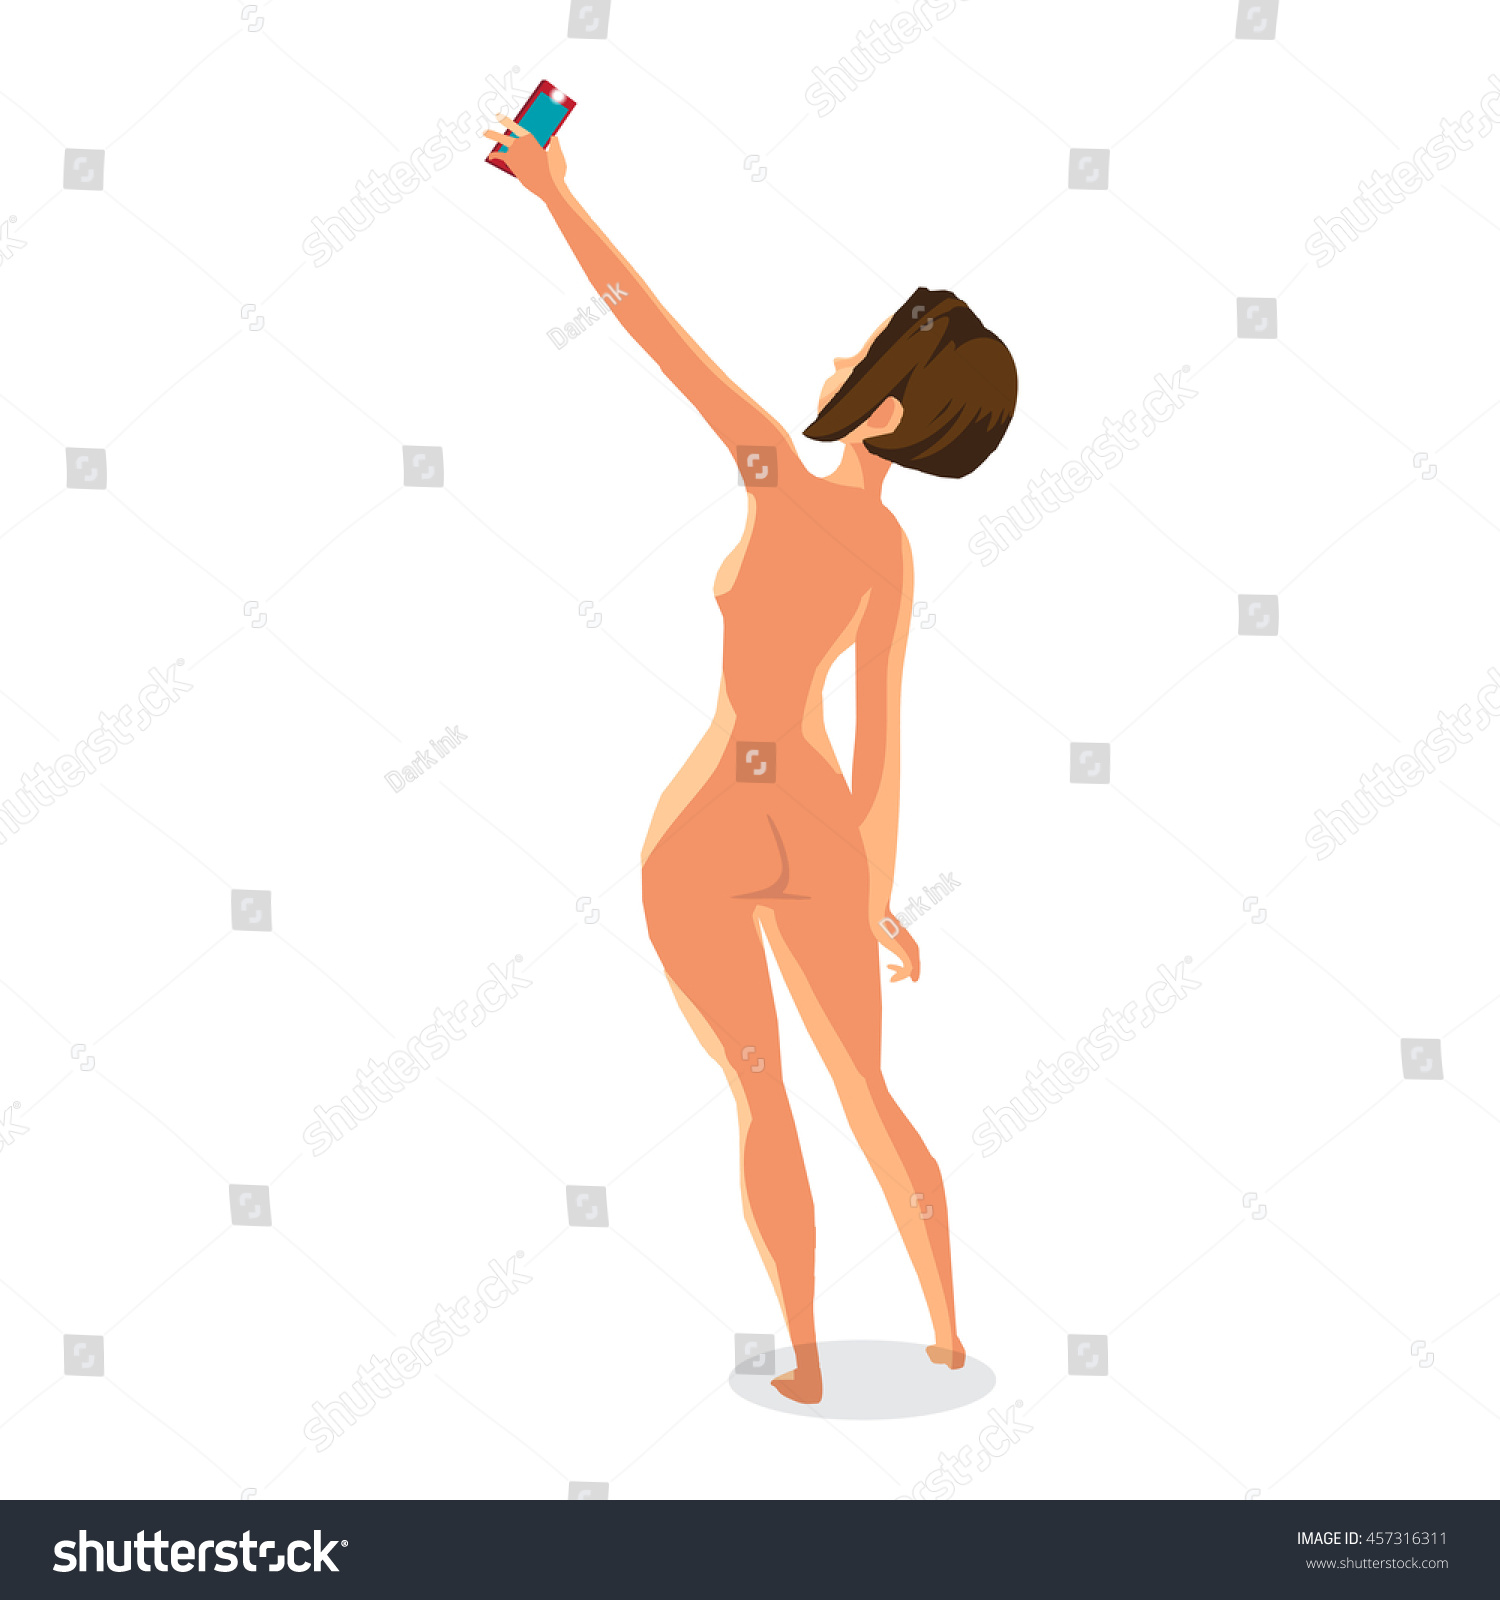 Nudist selfie